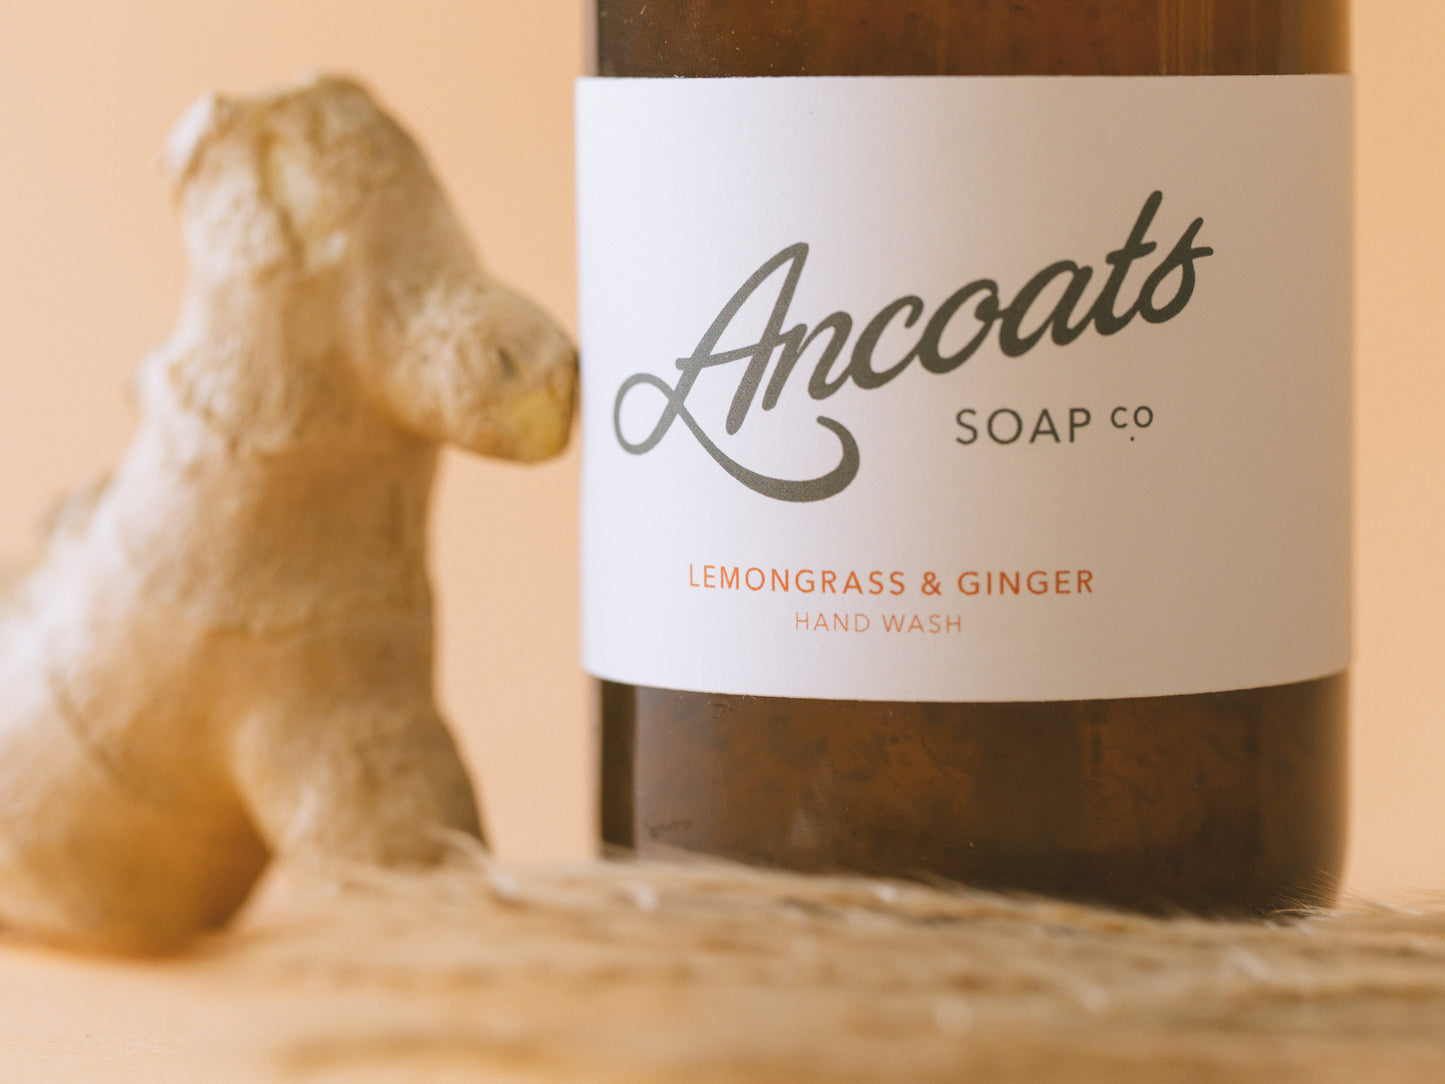 Lemongrass & Ginger Hand Wash